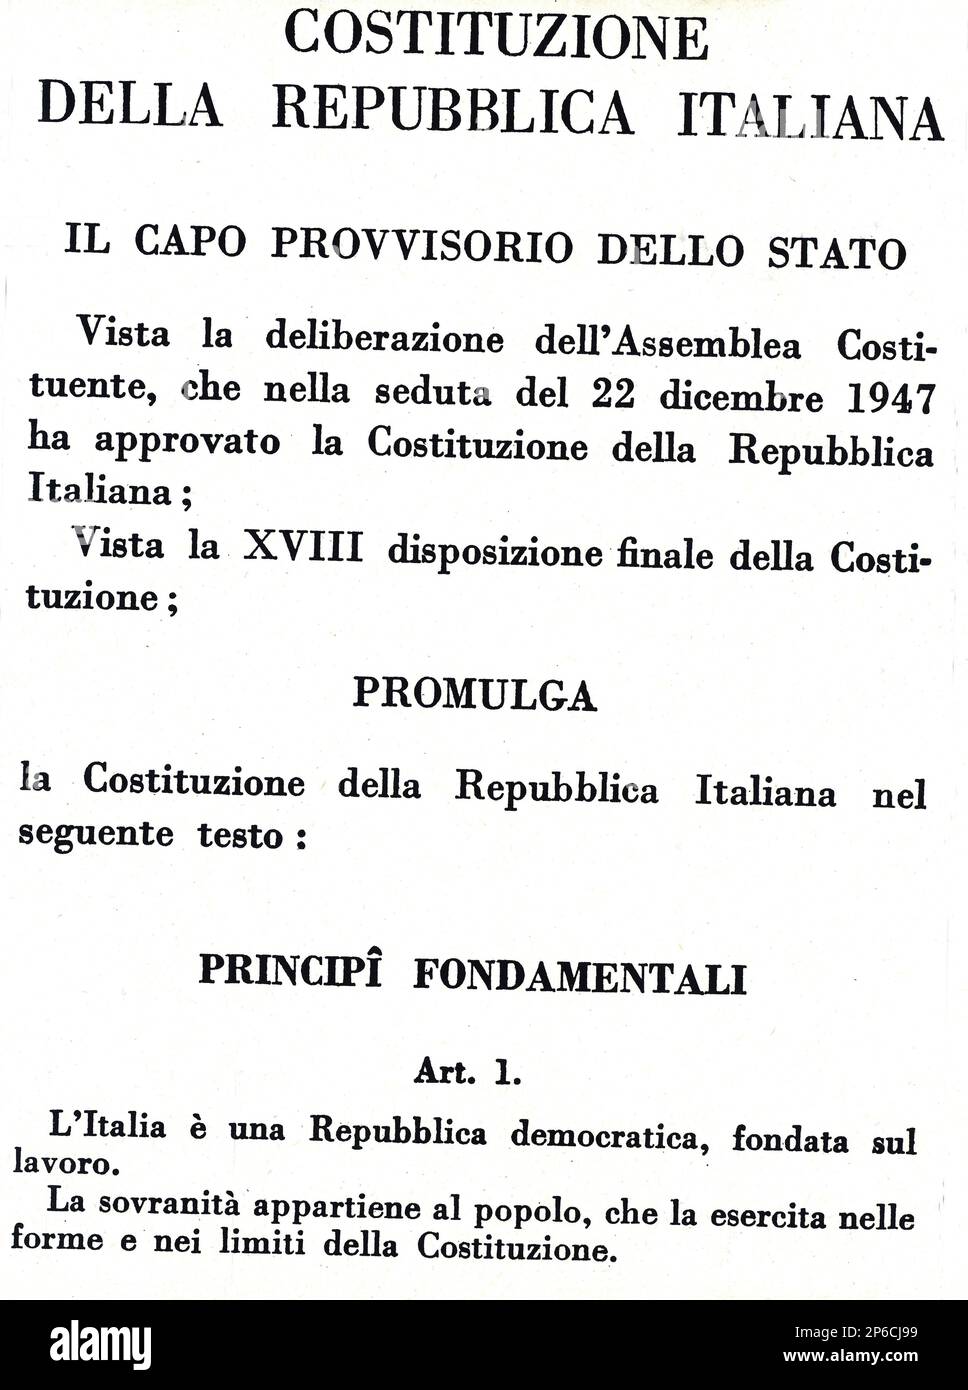 1947 , 22 . dezember , ROM , ITALIEN : die italienische Proklamation DER VERFASSUNG DER REPUBLIK - ROMA - ITALIA - FOTO STORICHE - GESCHICHTE - GEOGRAFIA - GEOGRAFIE - REPUBBLICA ITALIANA - COSTITUENTE - COSTITUZIONE REPUBBLICANA ---- Archivio GBB Stockfoto